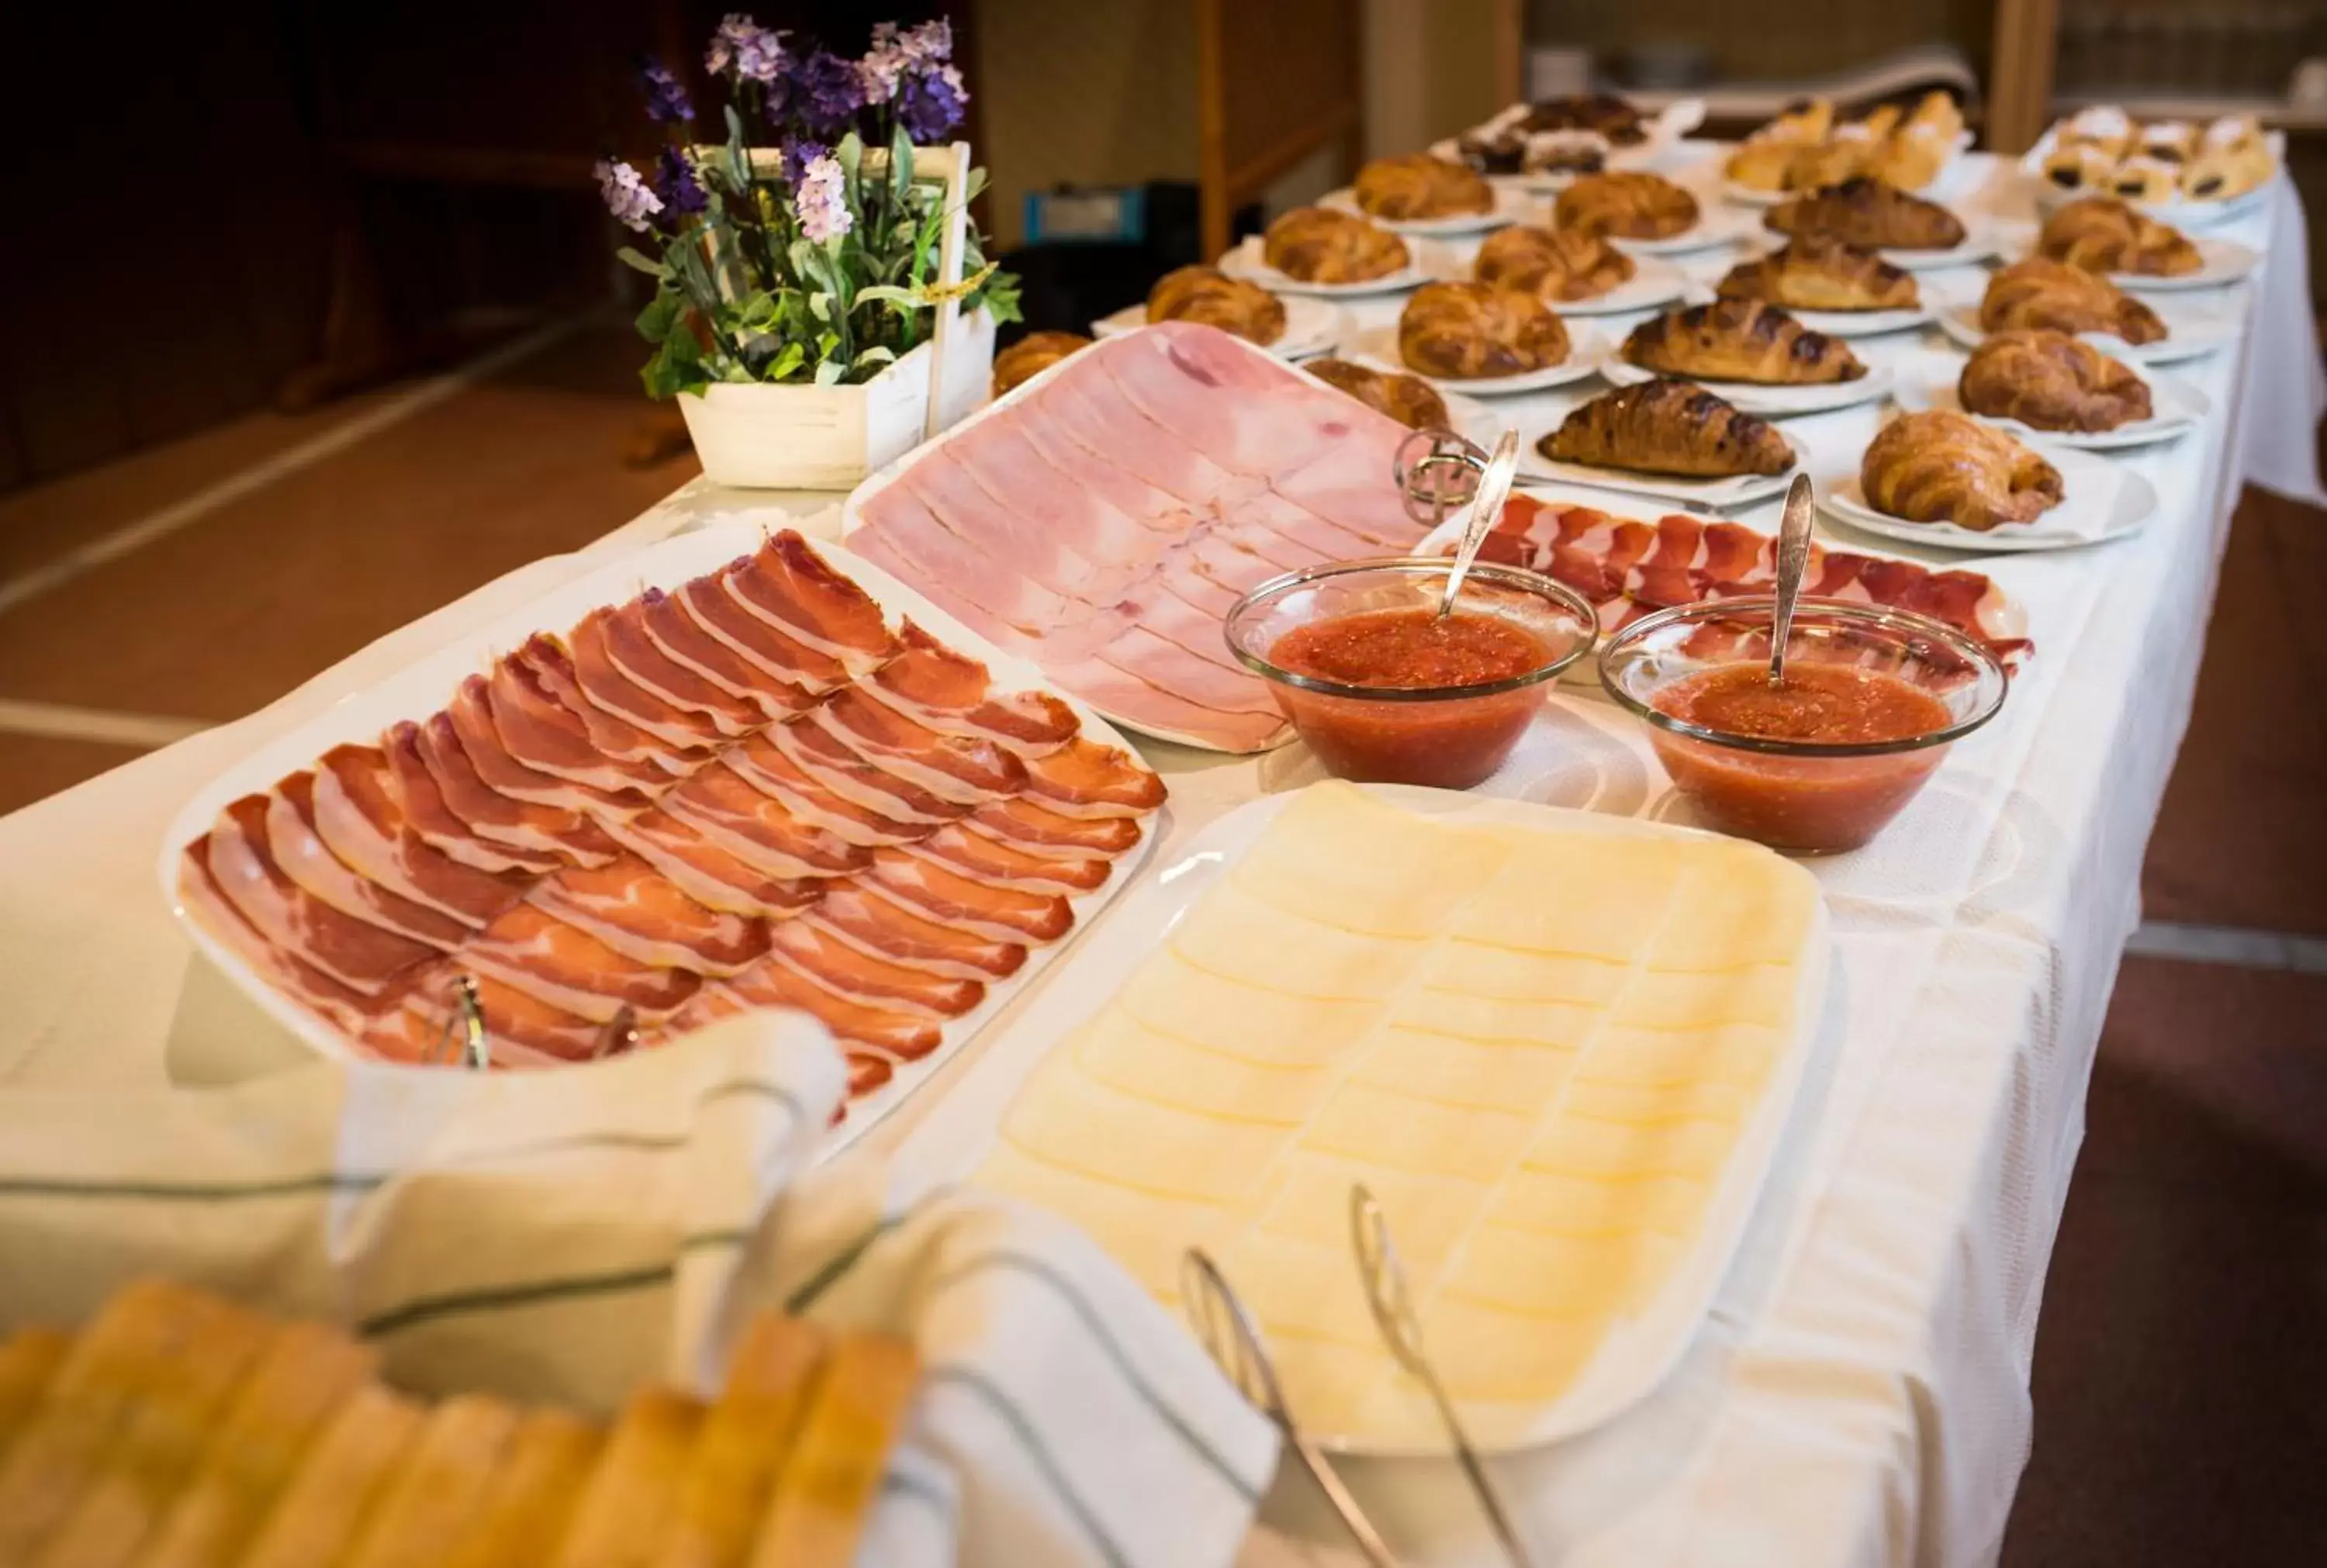 Buffet breakfast in Hotel Nadal